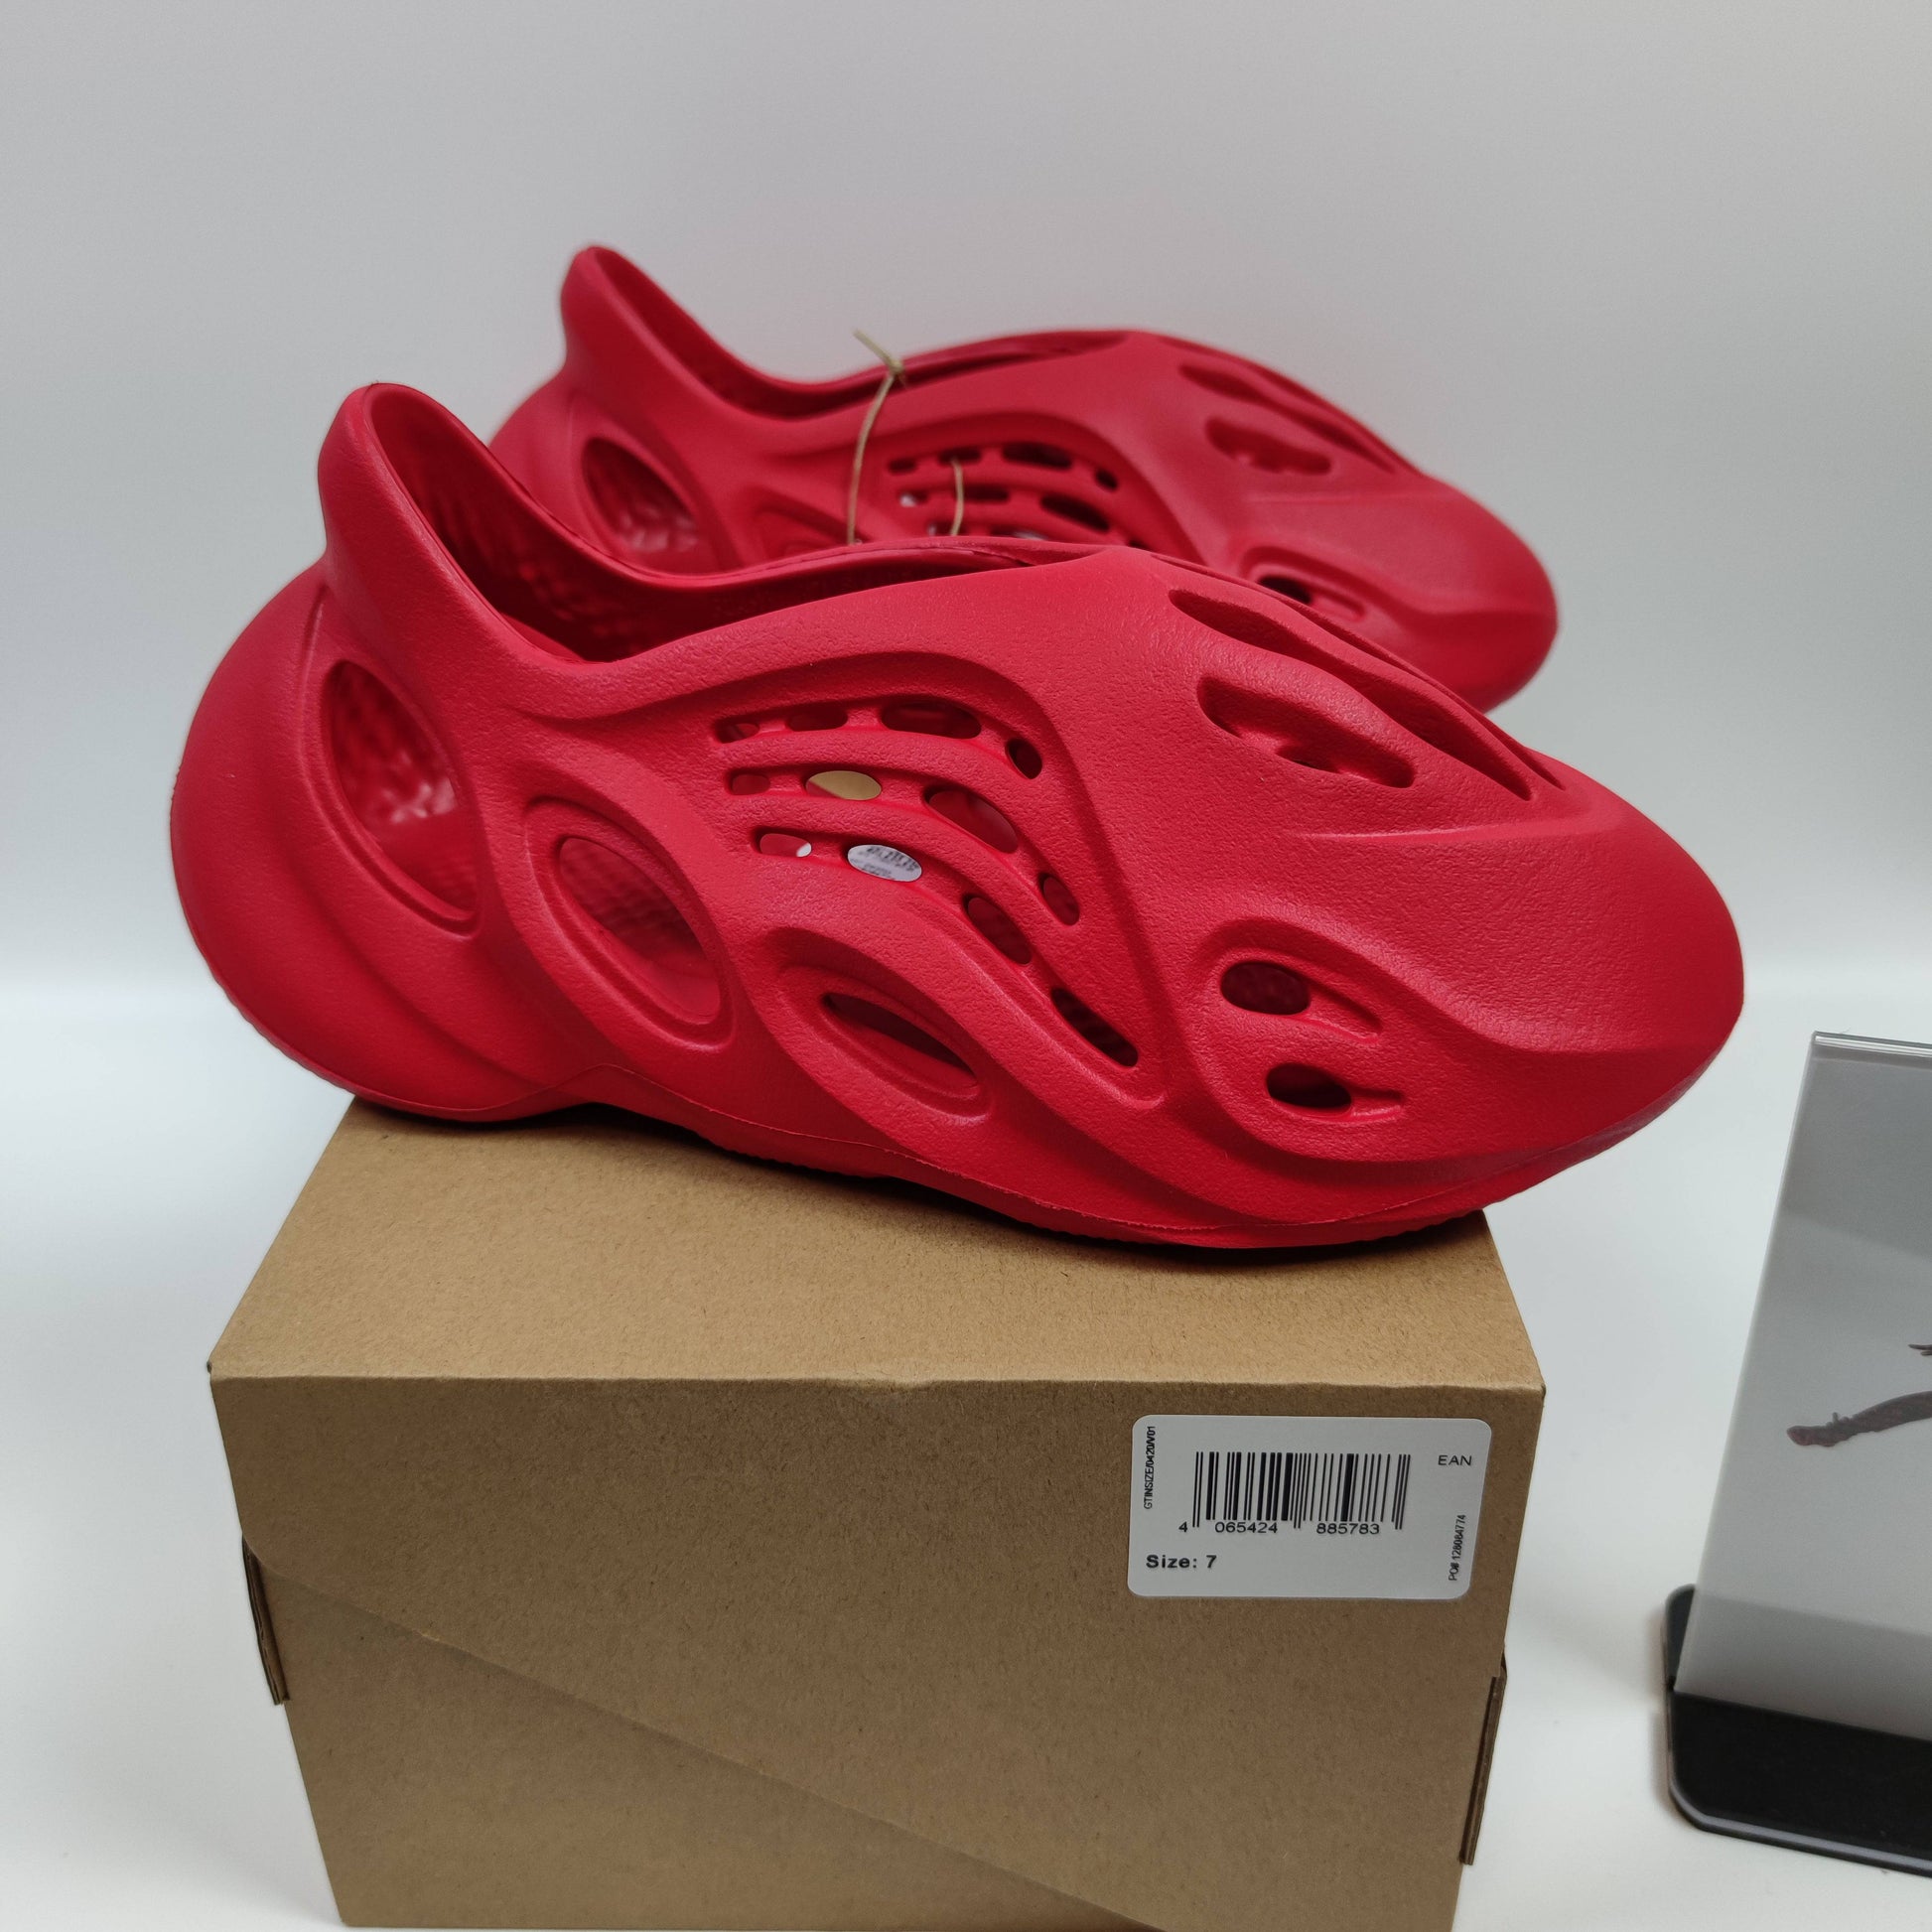 adidas Yeezy Foam Runner Vermilion GW3355 